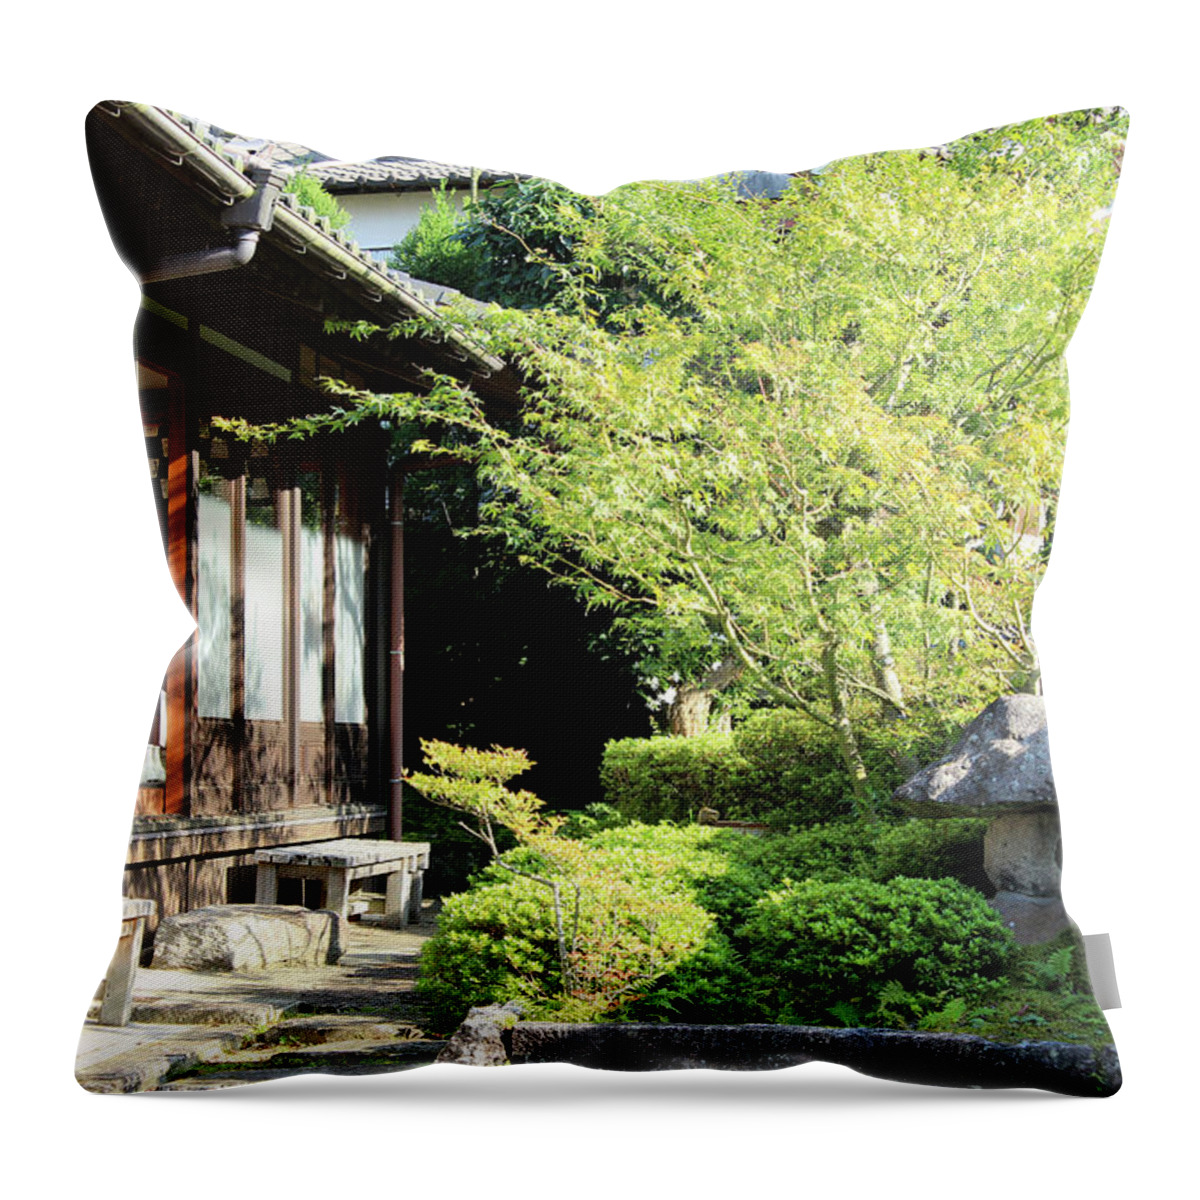 Japanese Private Garden Throw Pillow featuring the photograph Japanese private house garden by Kaoru Shimada